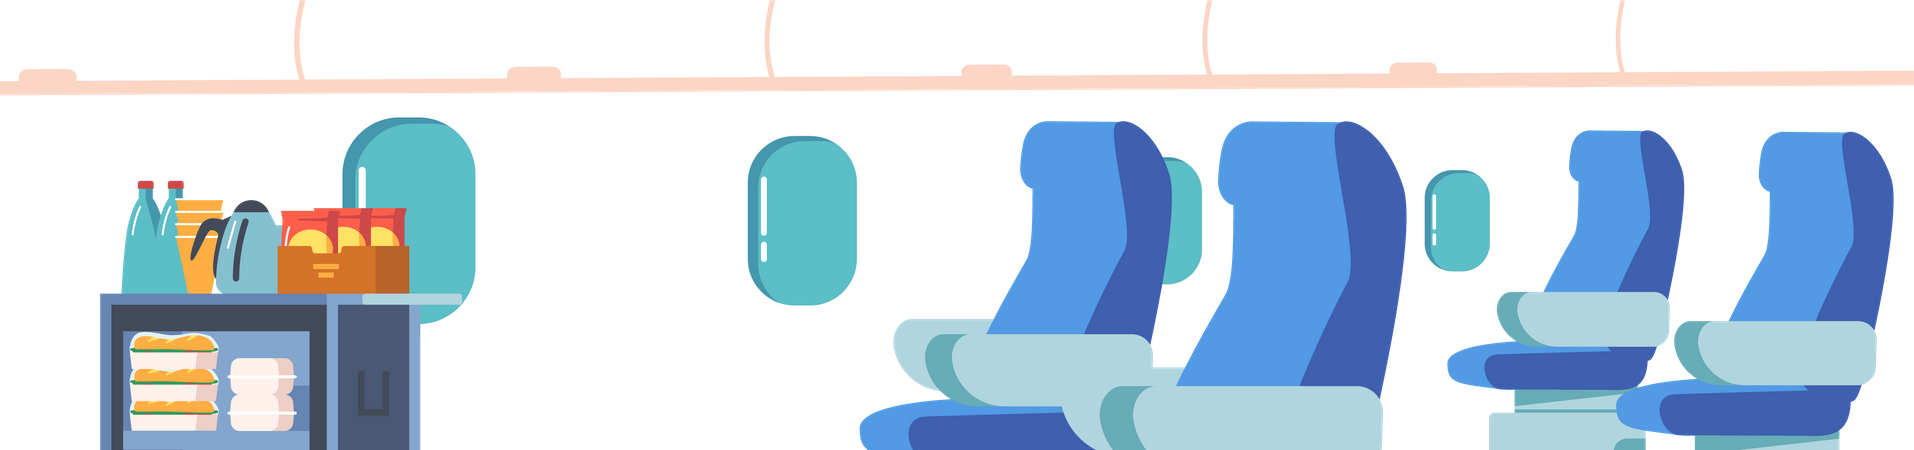 Leeres Flugzeug-Interieur  Illustration